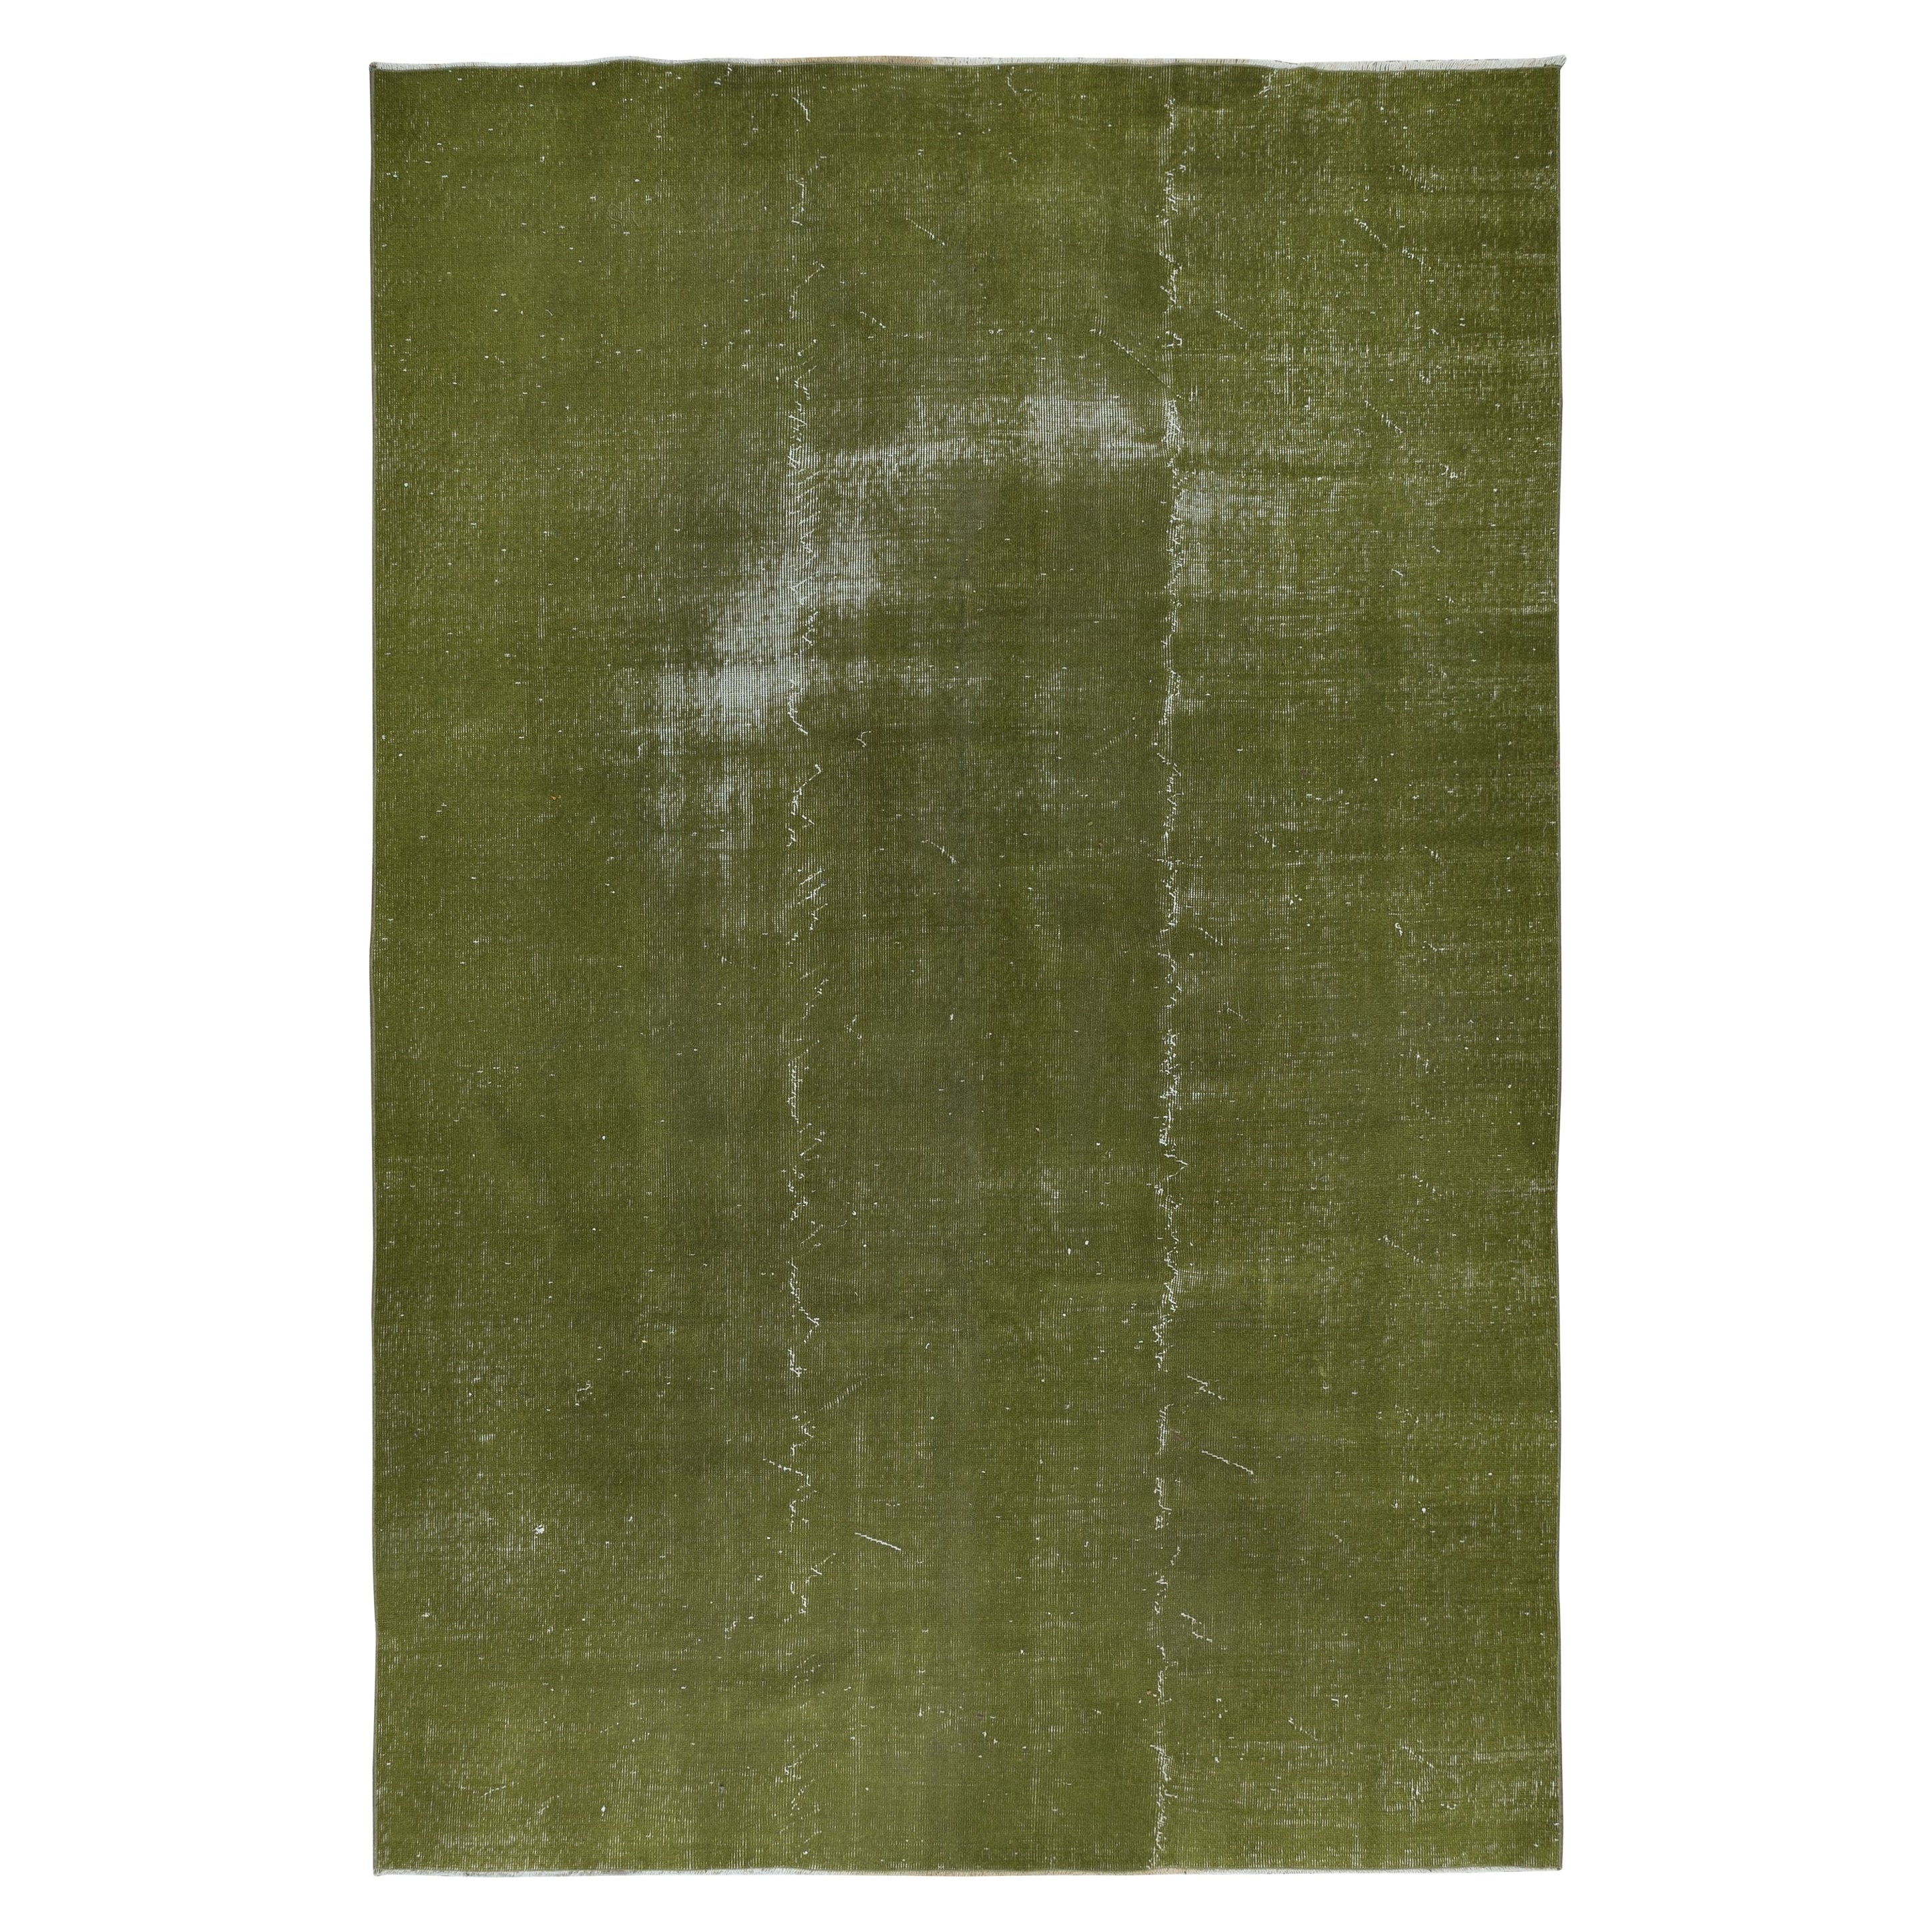 6.7x10.2 Ft Moderner handgefertigter türkischer grüner Teppich im Distressed Look Vintage-Look